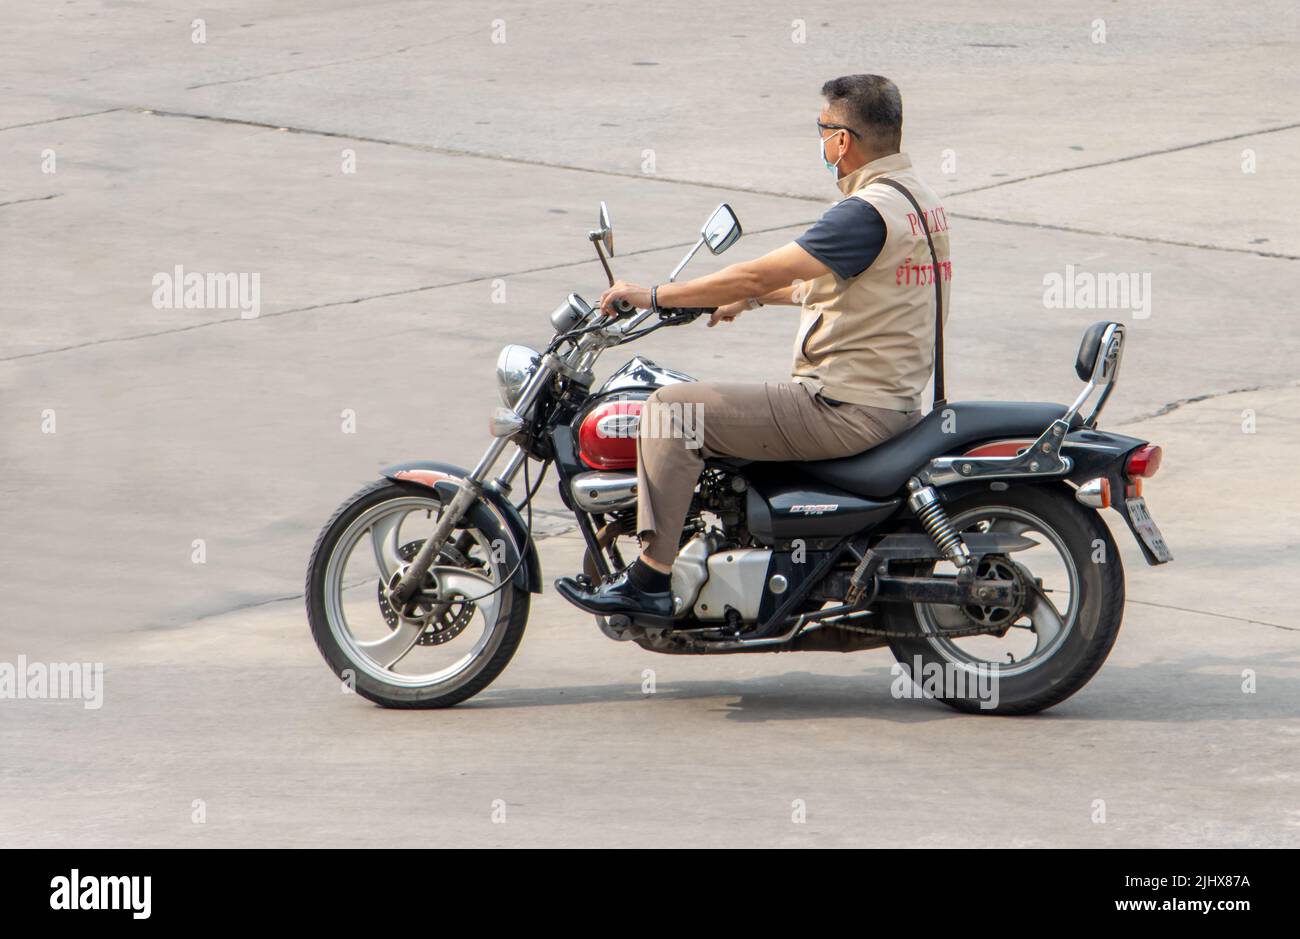 SAMUT PRAKAN, THAILAND, APR 19 2022, A man rides a motorcycle at the road Stock Photo